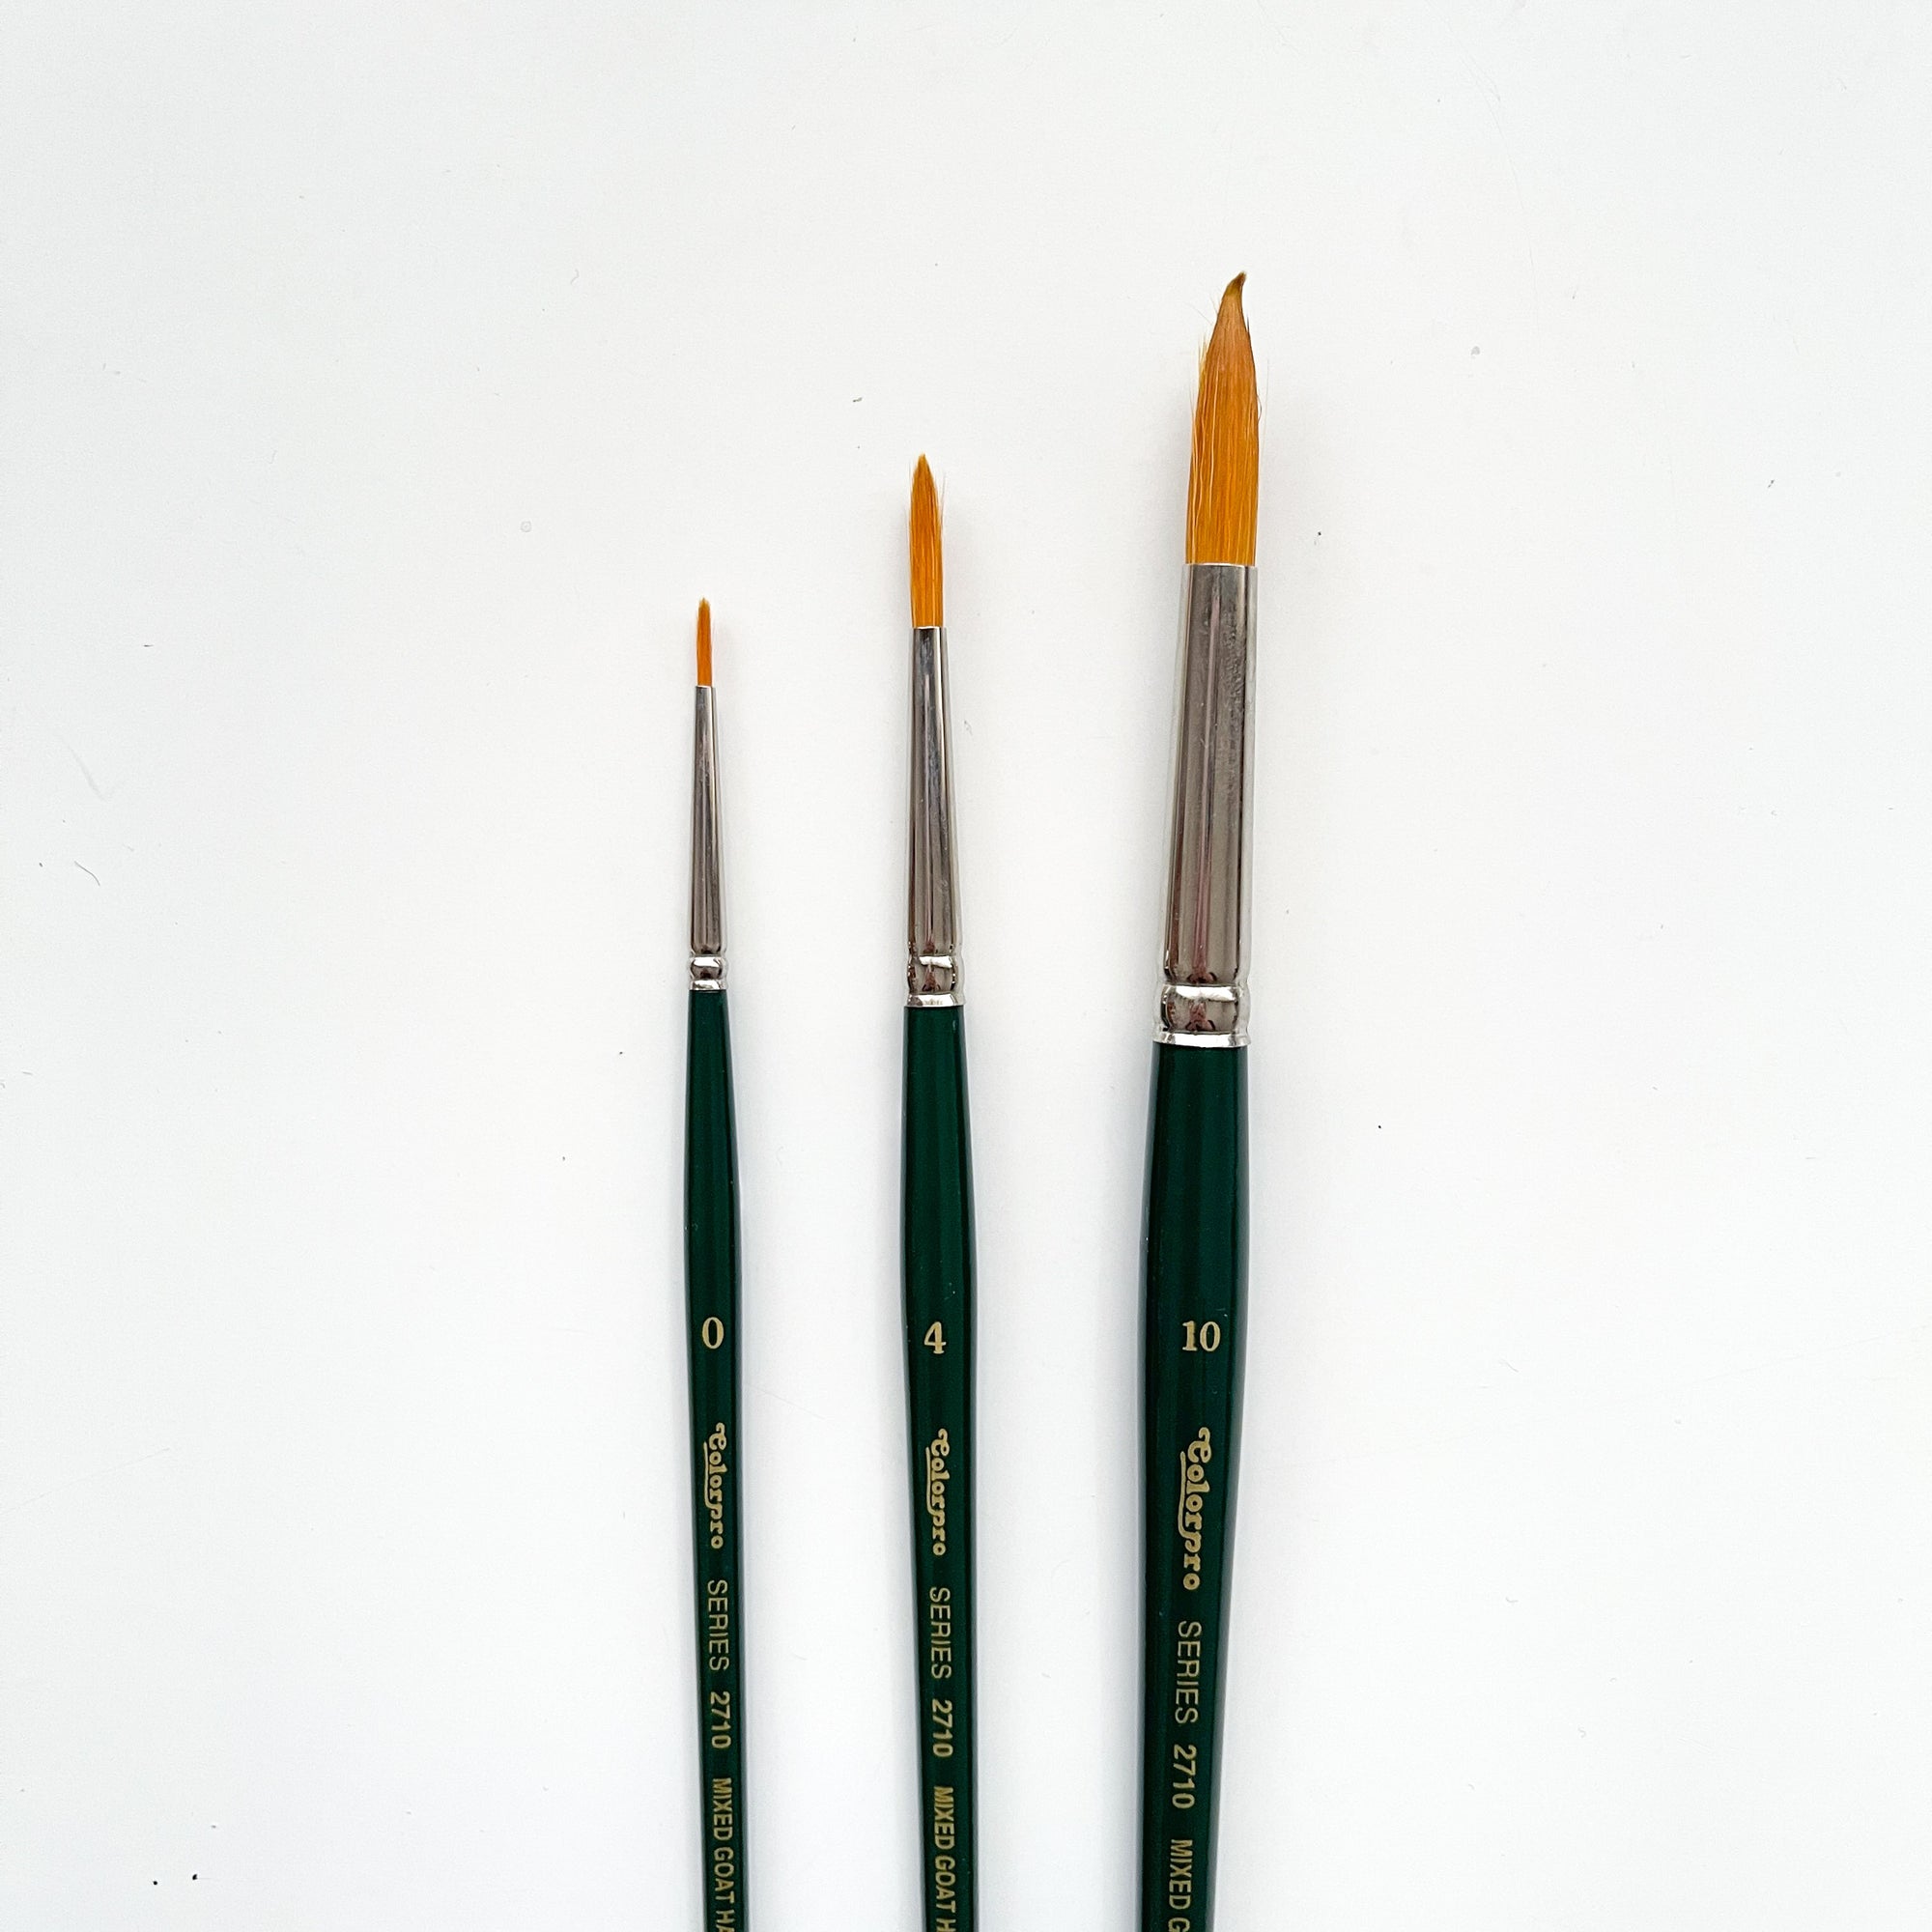 Colorpro Round Brushes - Size 0, 4, 10